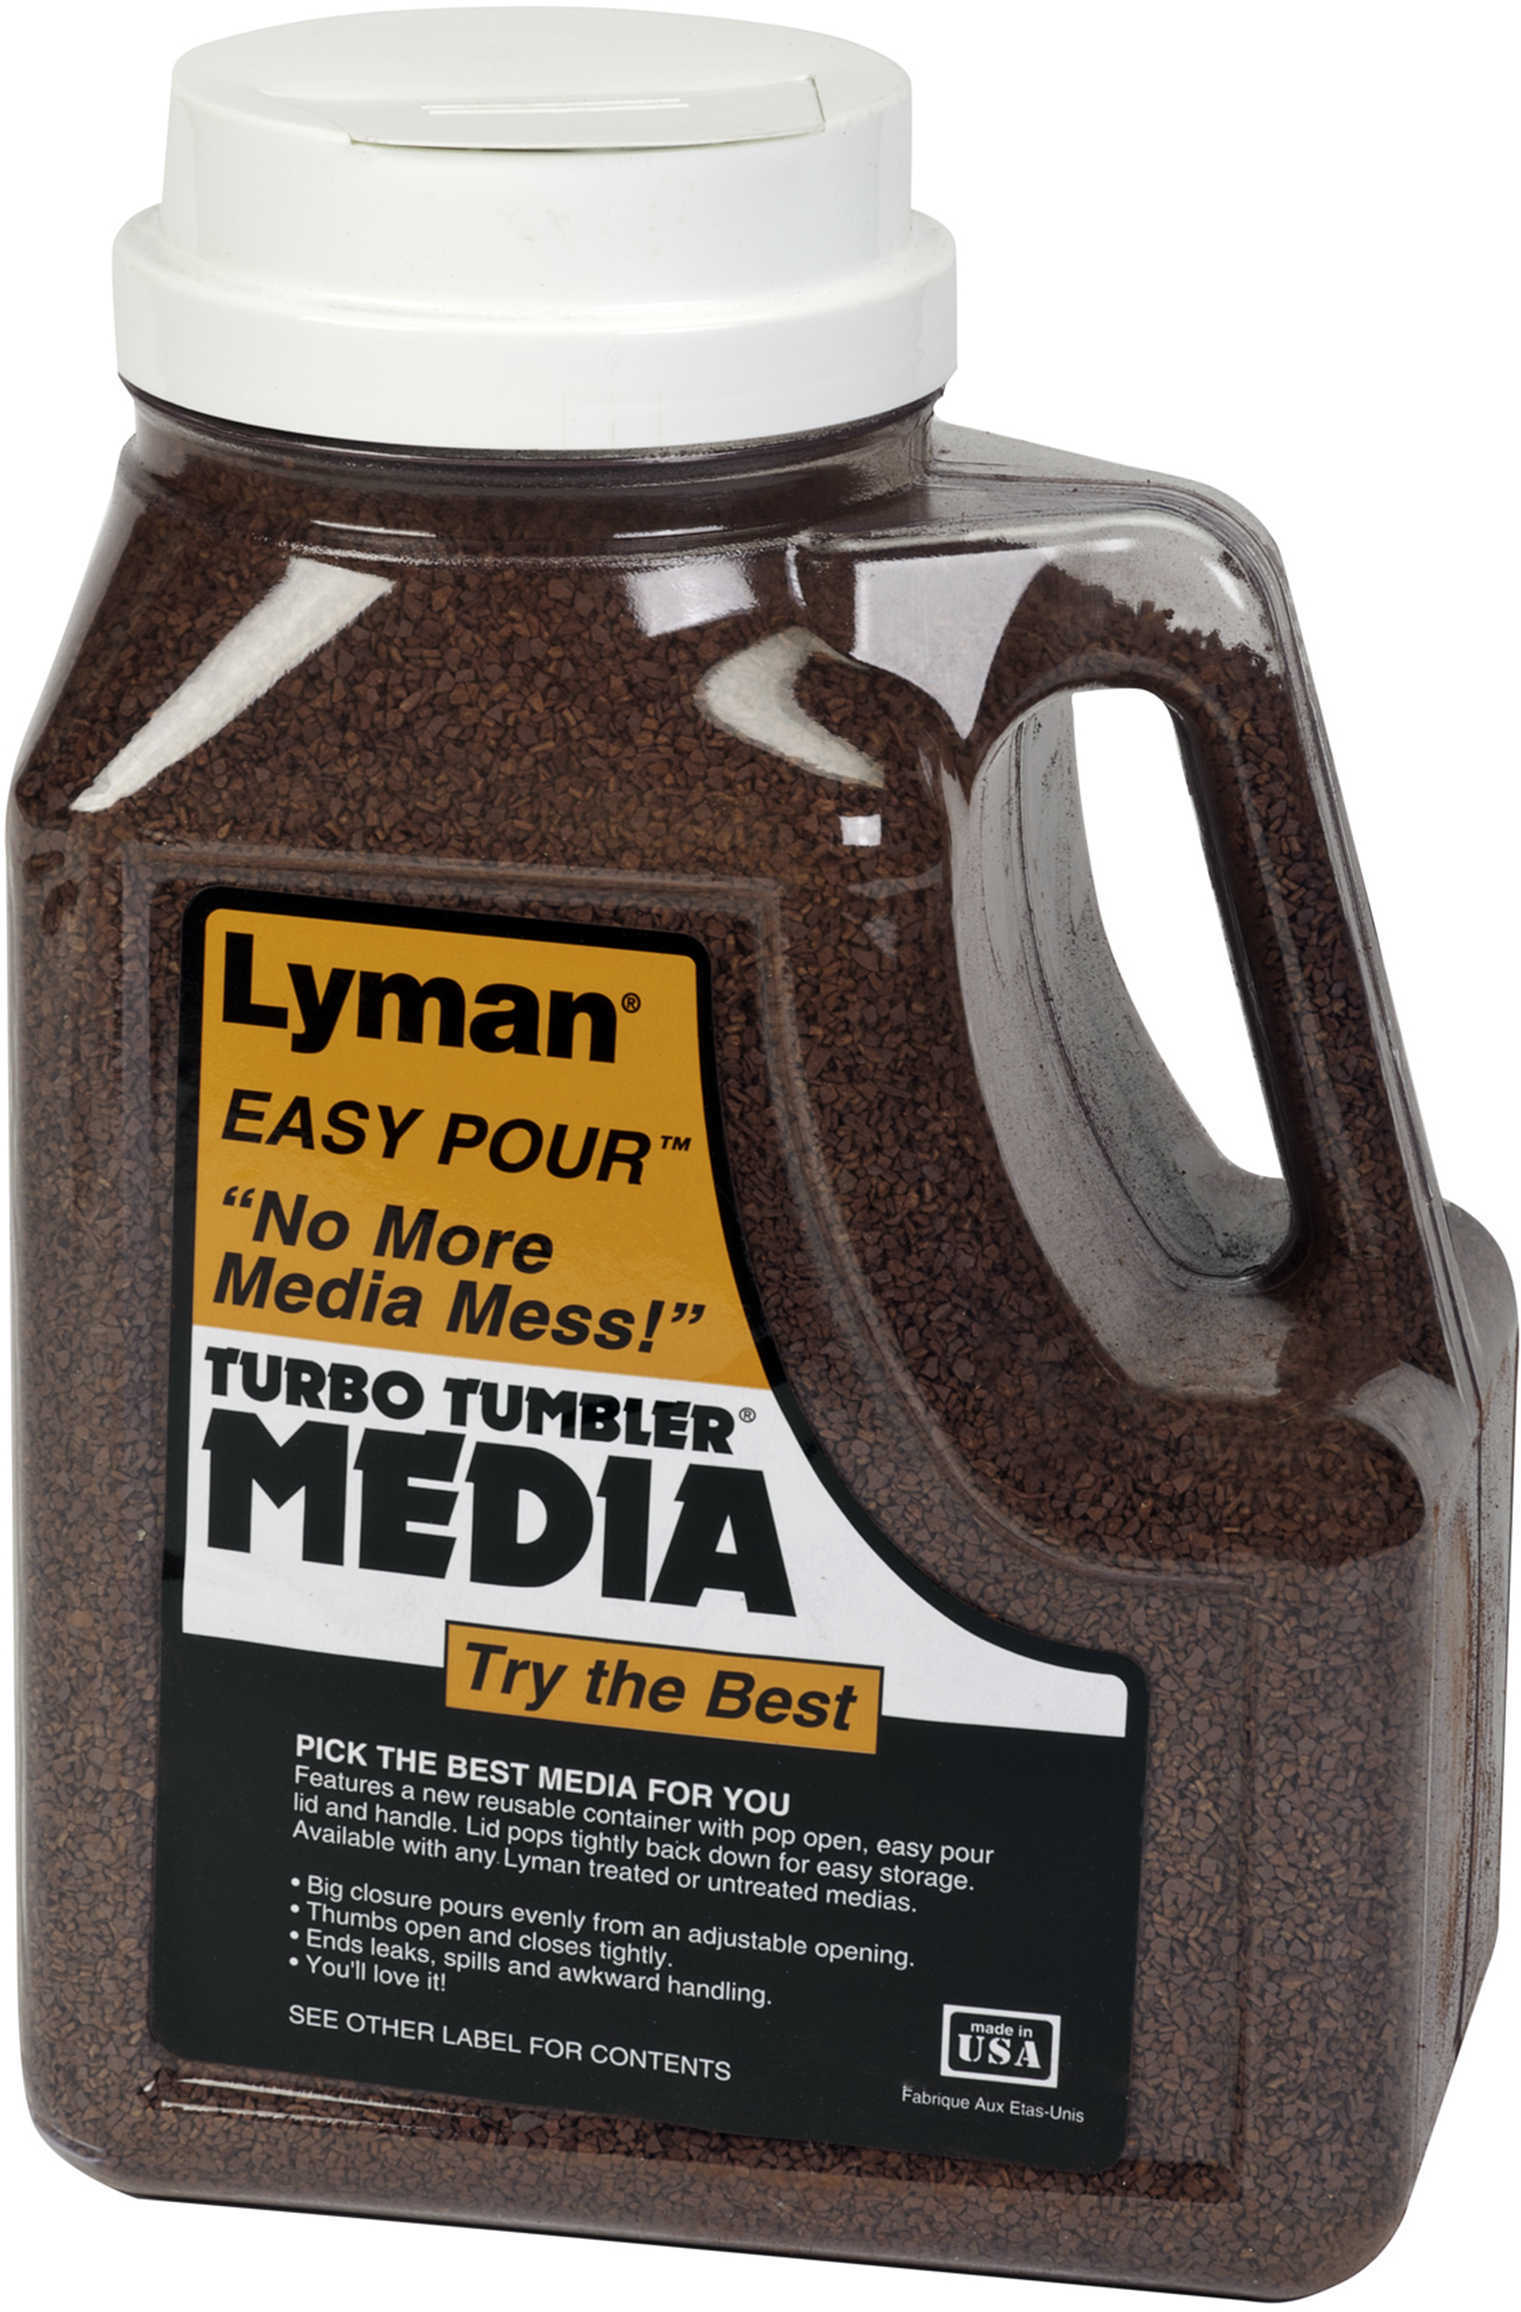 Lyman Easy Pour Media Tufnut 5.75 lbs, Model: 7631396